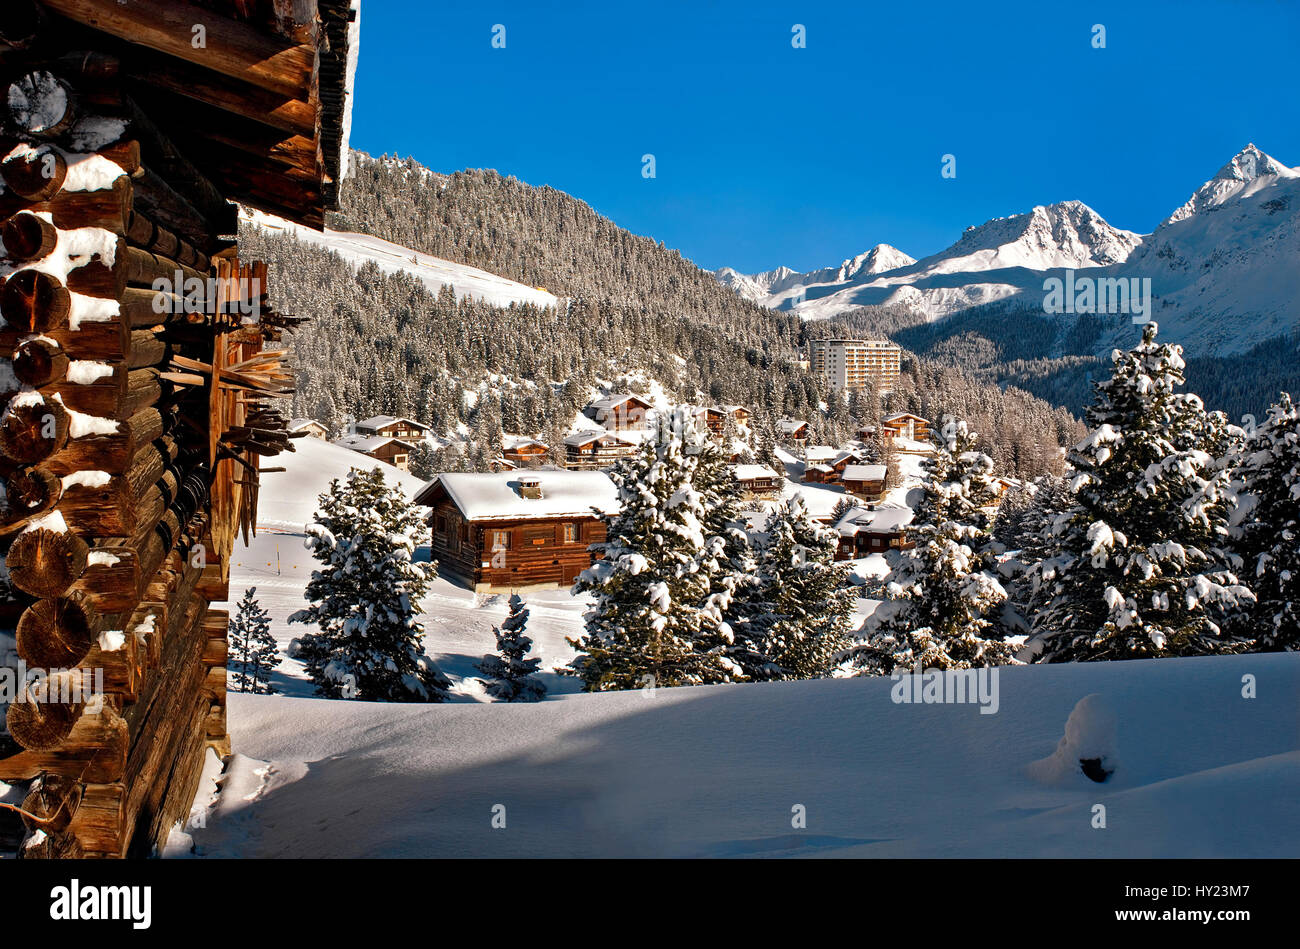 Petit village de montagne d'une station de ski d'Arosa en Suisse. Arosa est entourée de montagnes et est une célèbre station de ski suisse. Banque D'Images